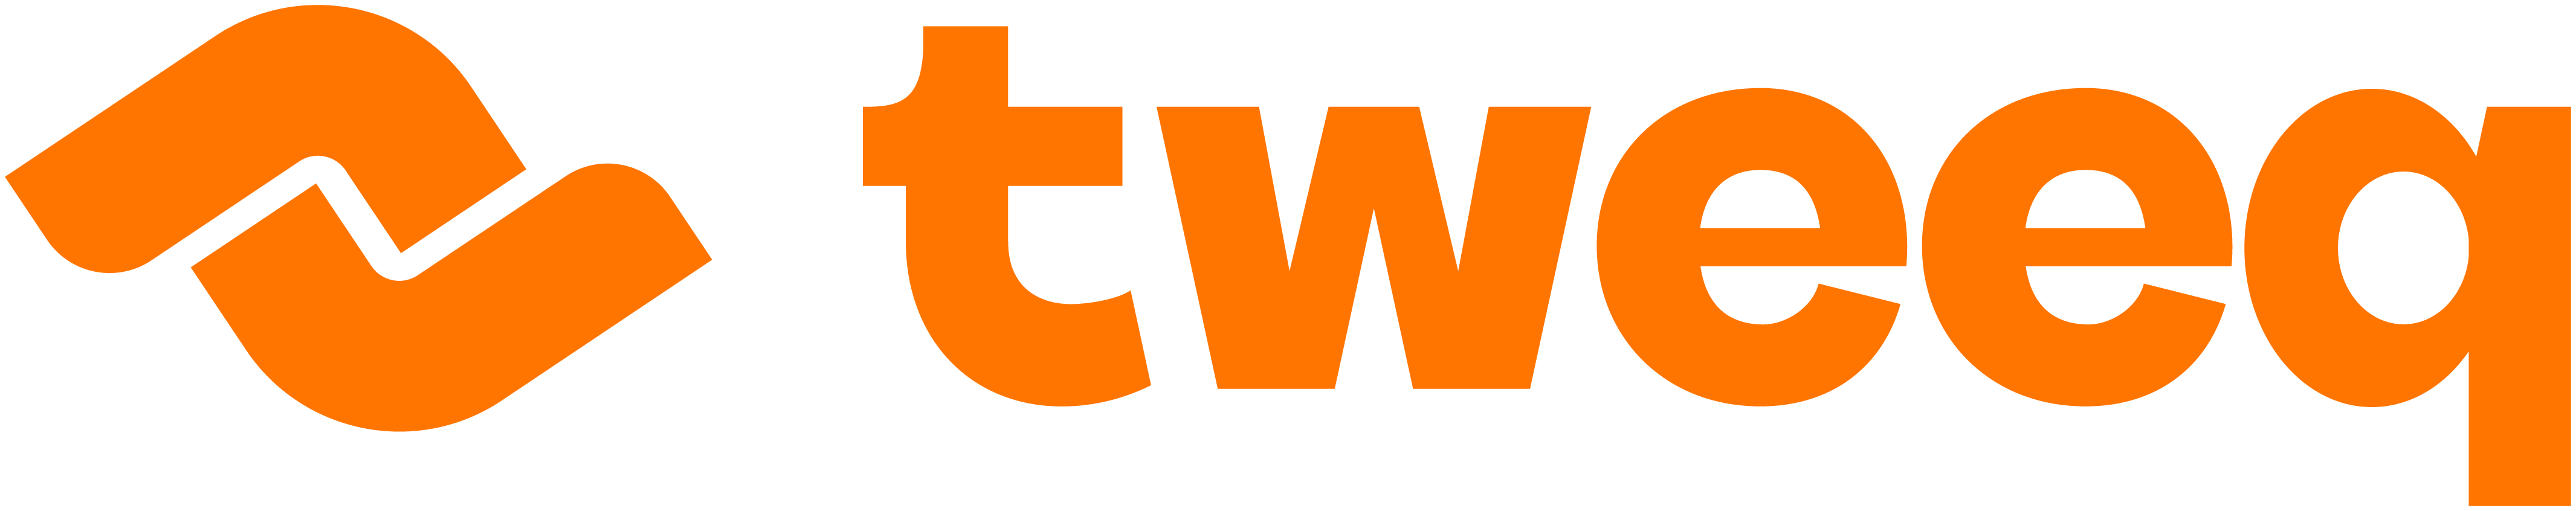 tweeq-logo-fc